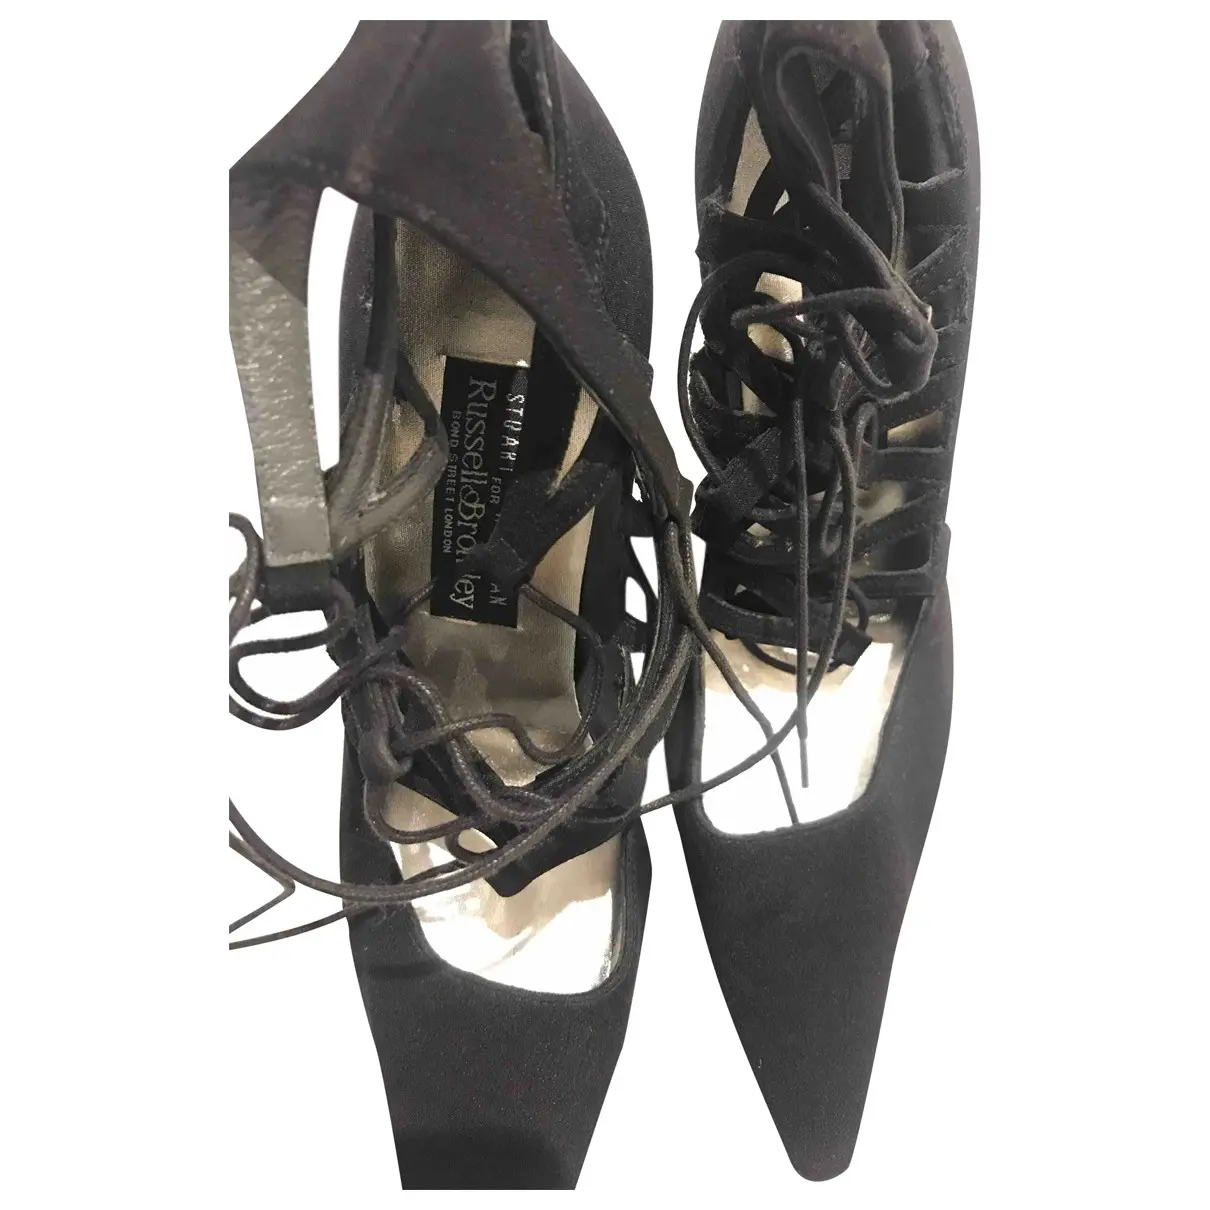 Cloth heels Stuart Weitzman